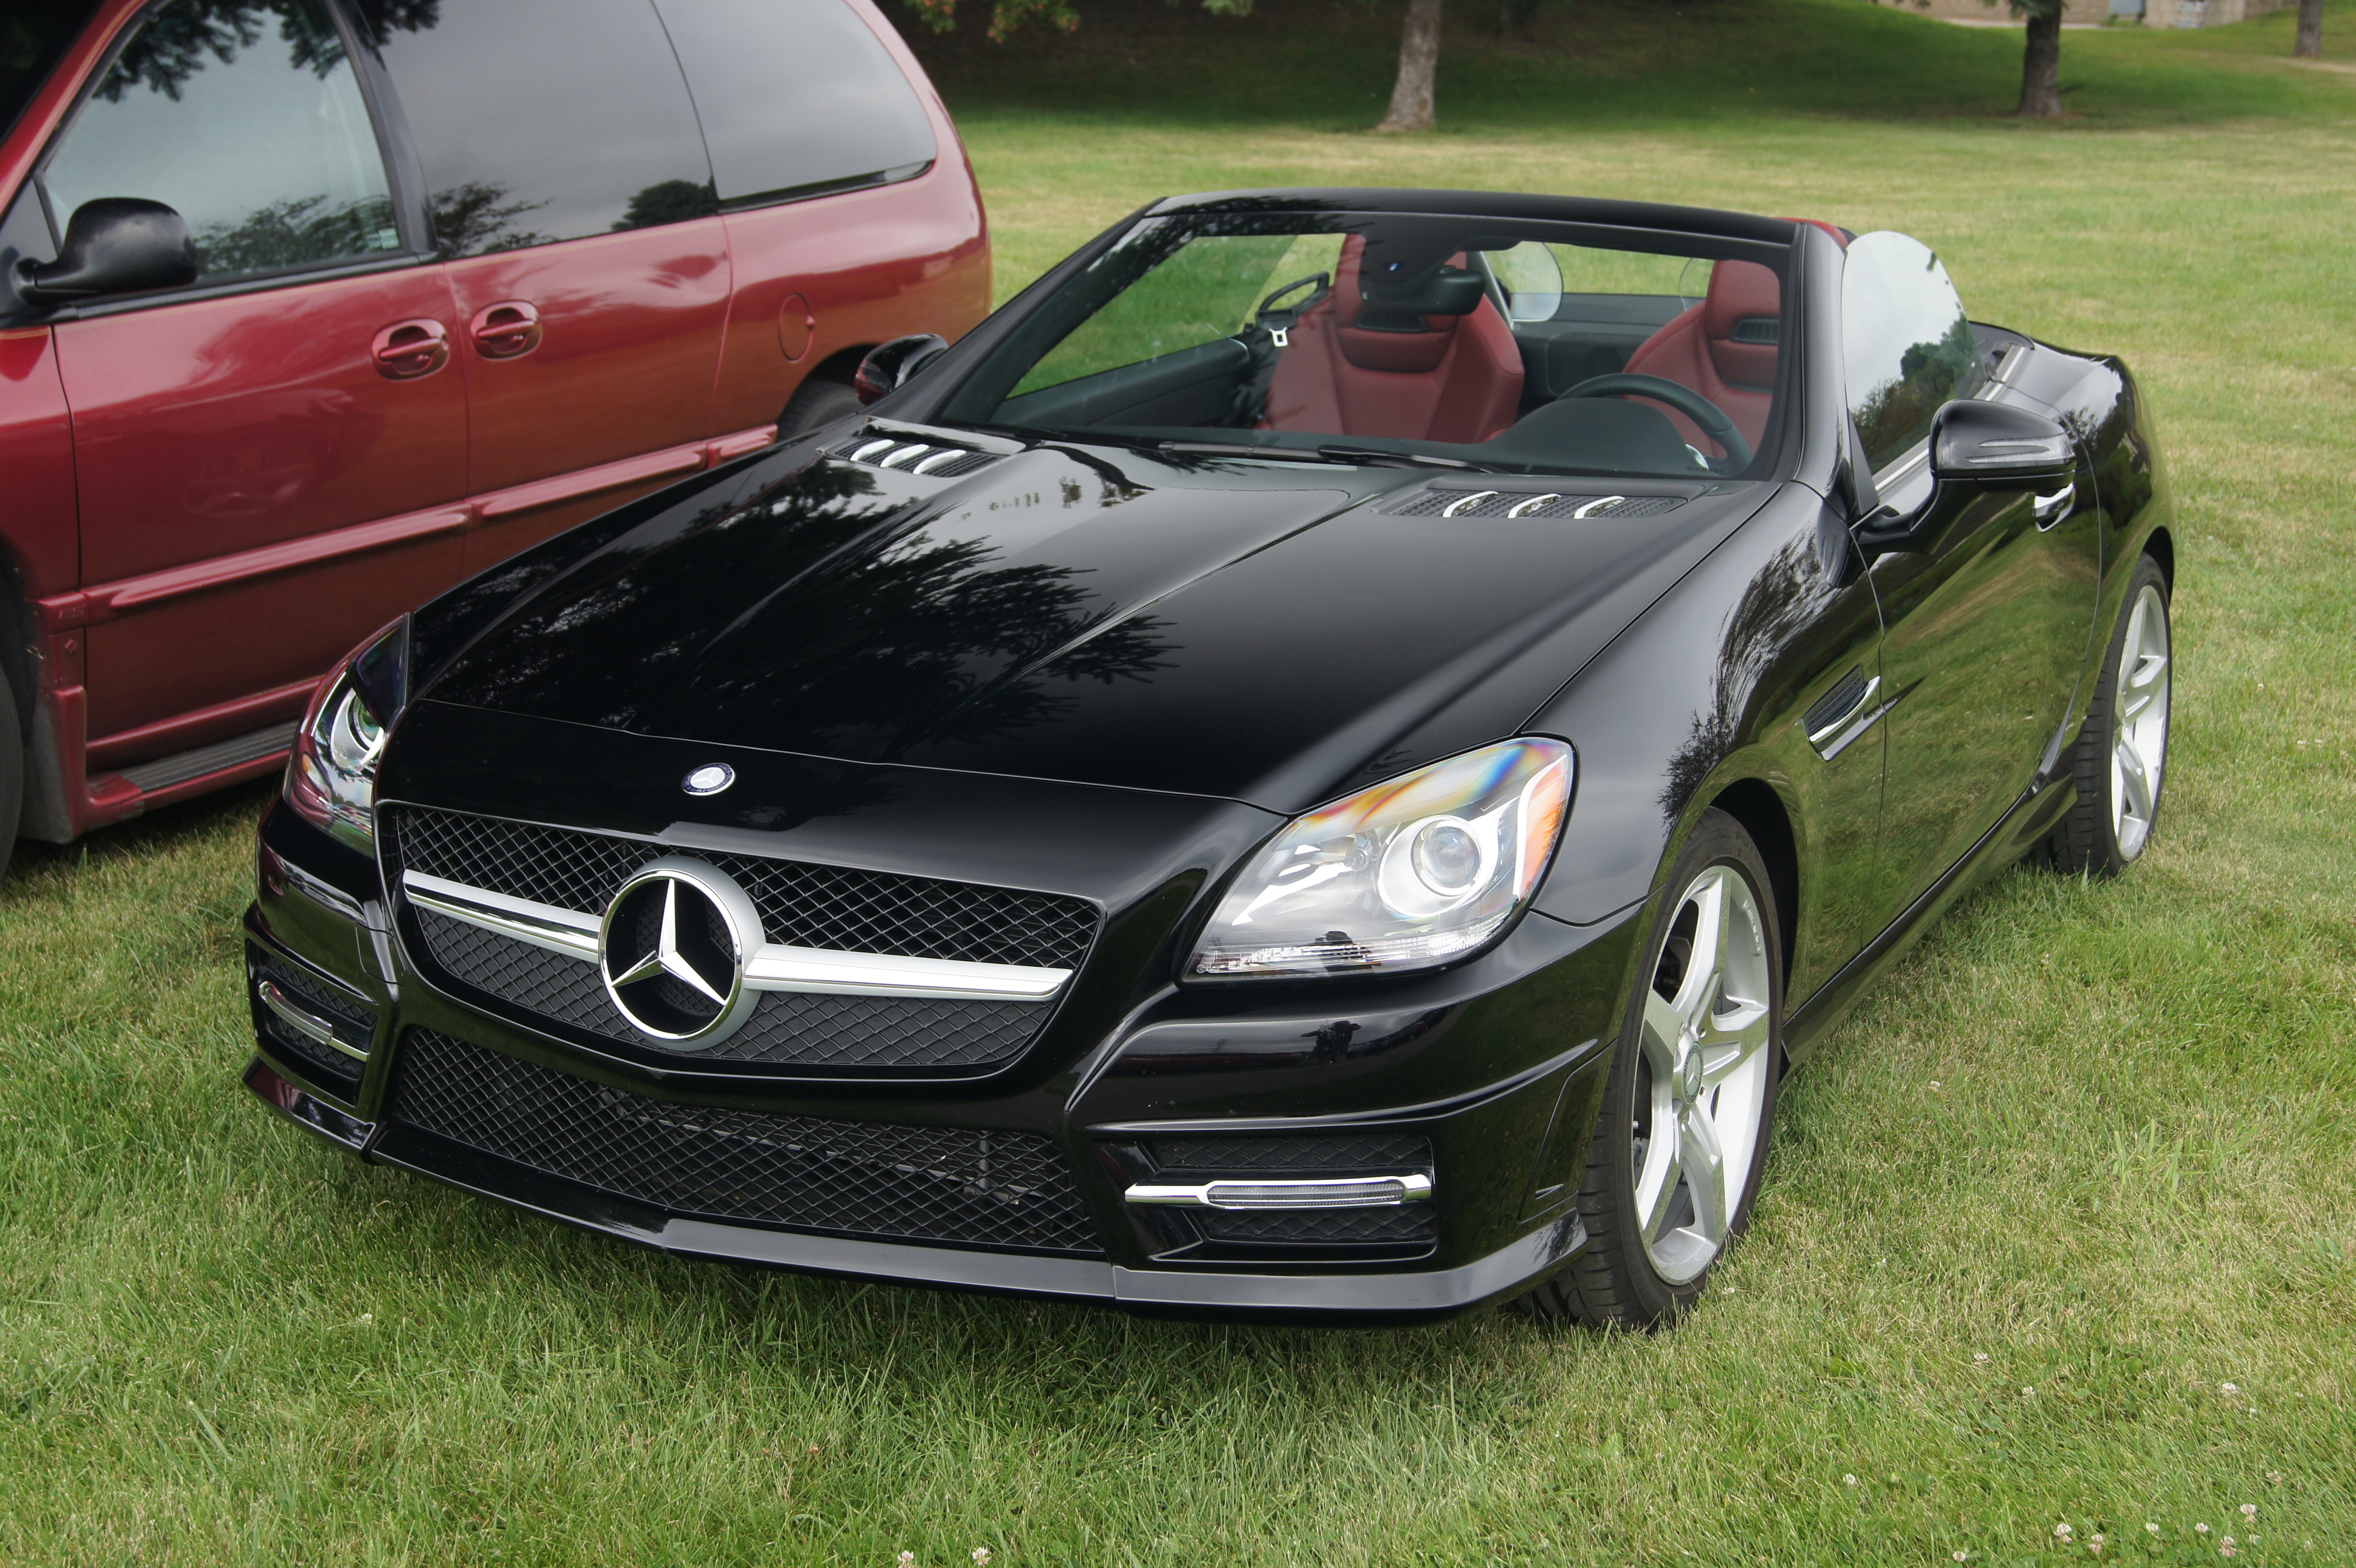 File:2014 Mercedes Benz SLK 350 (14754450120).jpg - Wikimedia Commons